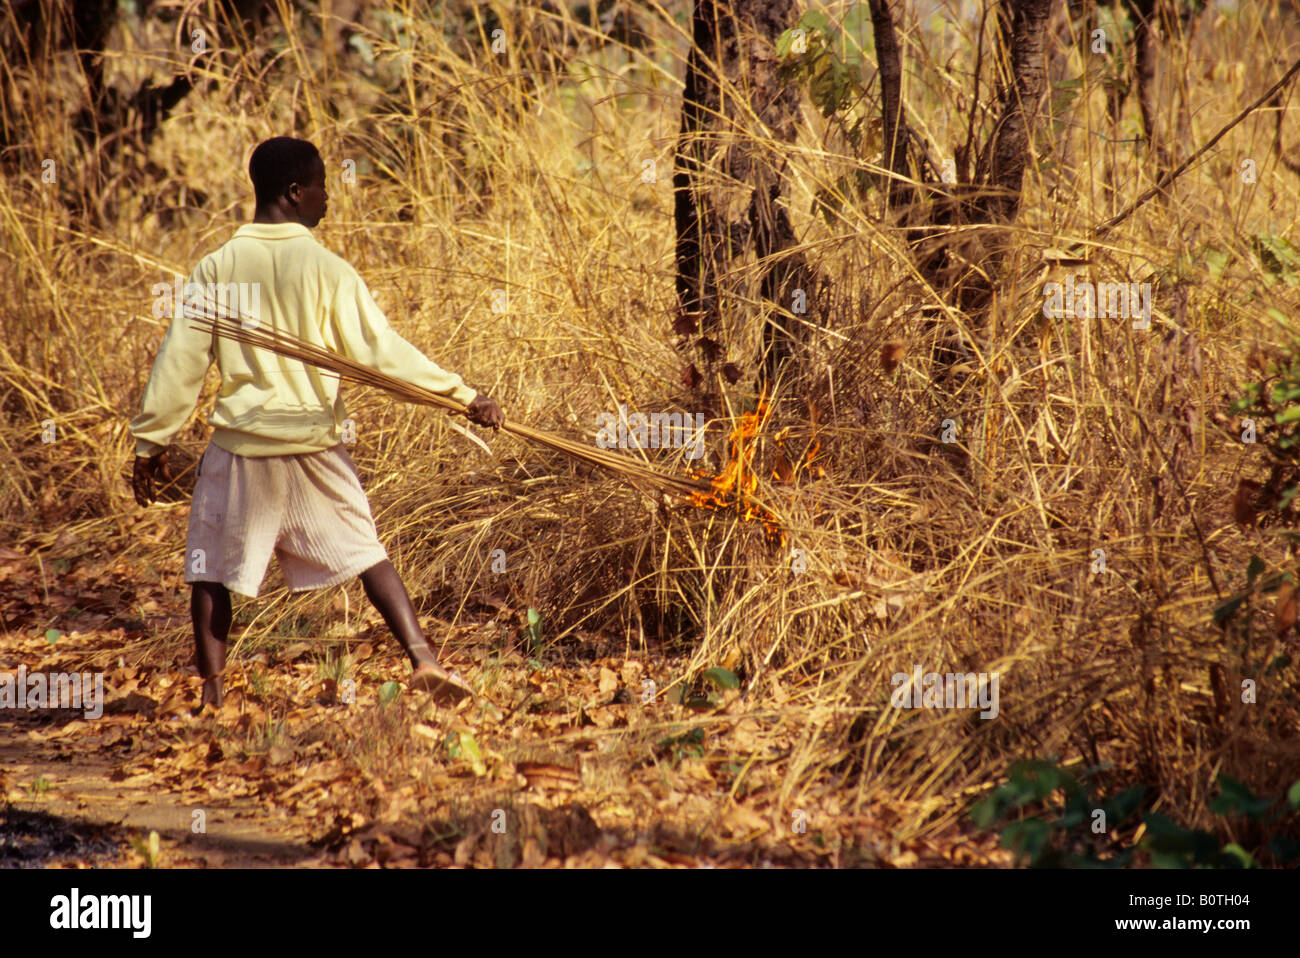 La parte occidentale della Costa d Avorio, Costa d' Avorio, Africa occidentale. Giovane uomo impostazione Bush Fire. Foto Stock